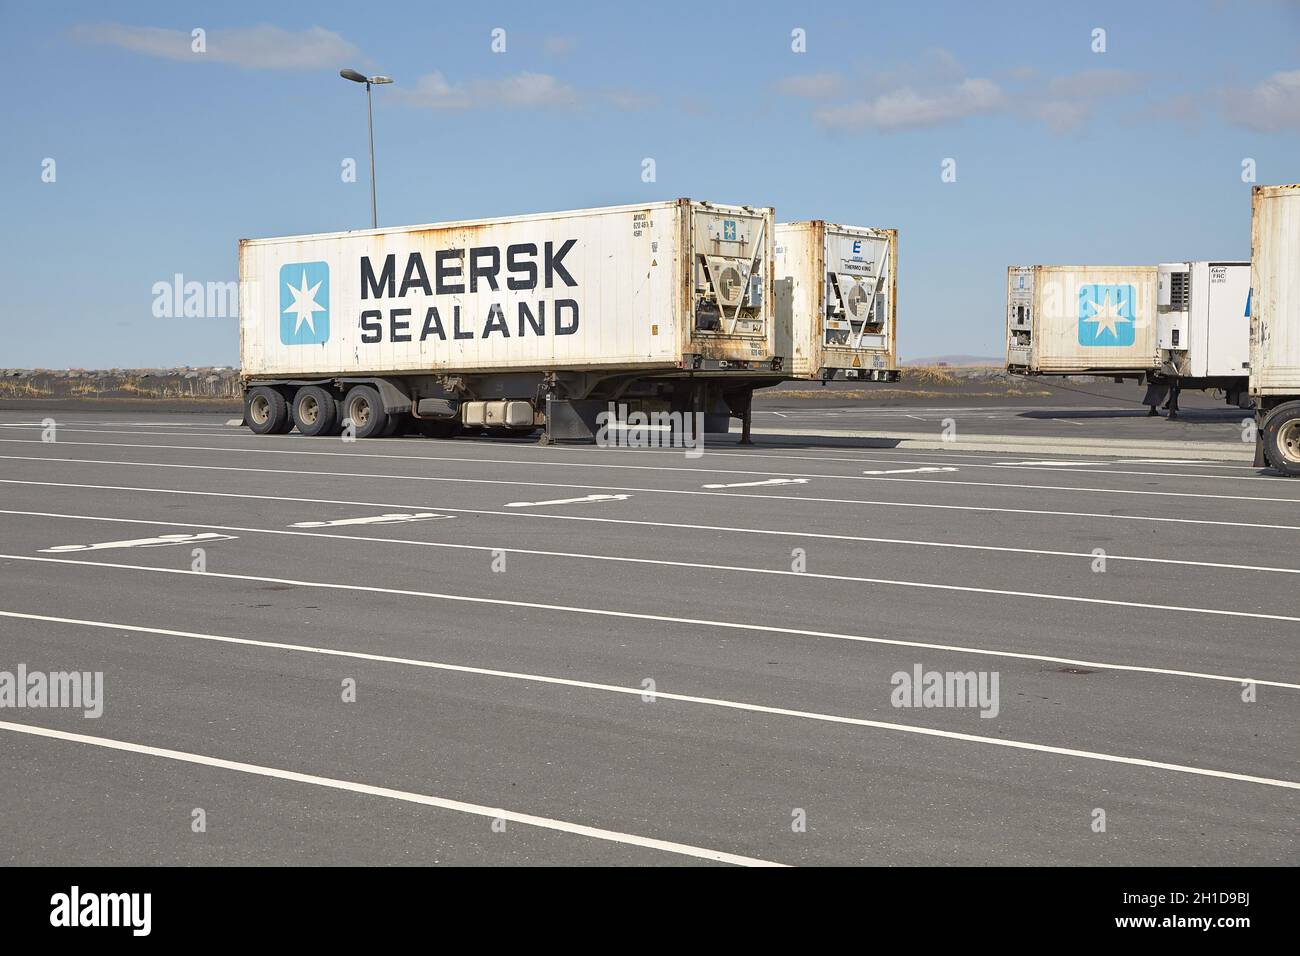 LANDEYJAFOFN, ISLANDA - CIRCA 2015: Container per il trasporto merci di Sealand, una divisione del gruppo Maersk, su rimorchi per camion in un parcheggio in Islanda Foto Stock